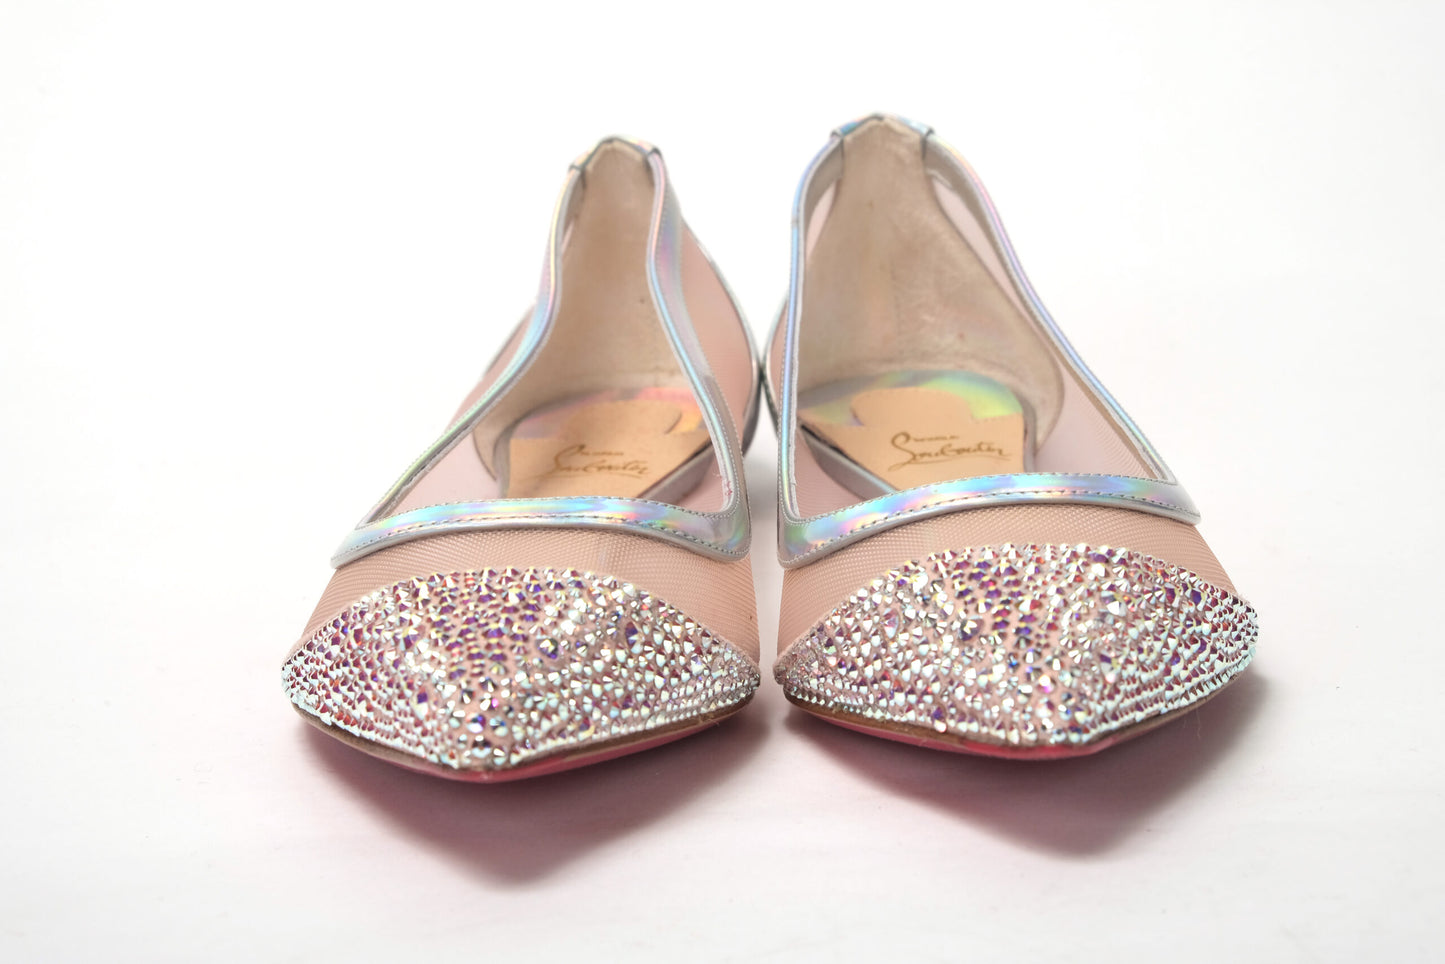 حذاء كريستيان لوبوتان باللون الفضي الوردي ومقدمة مسطحة من الكريستال